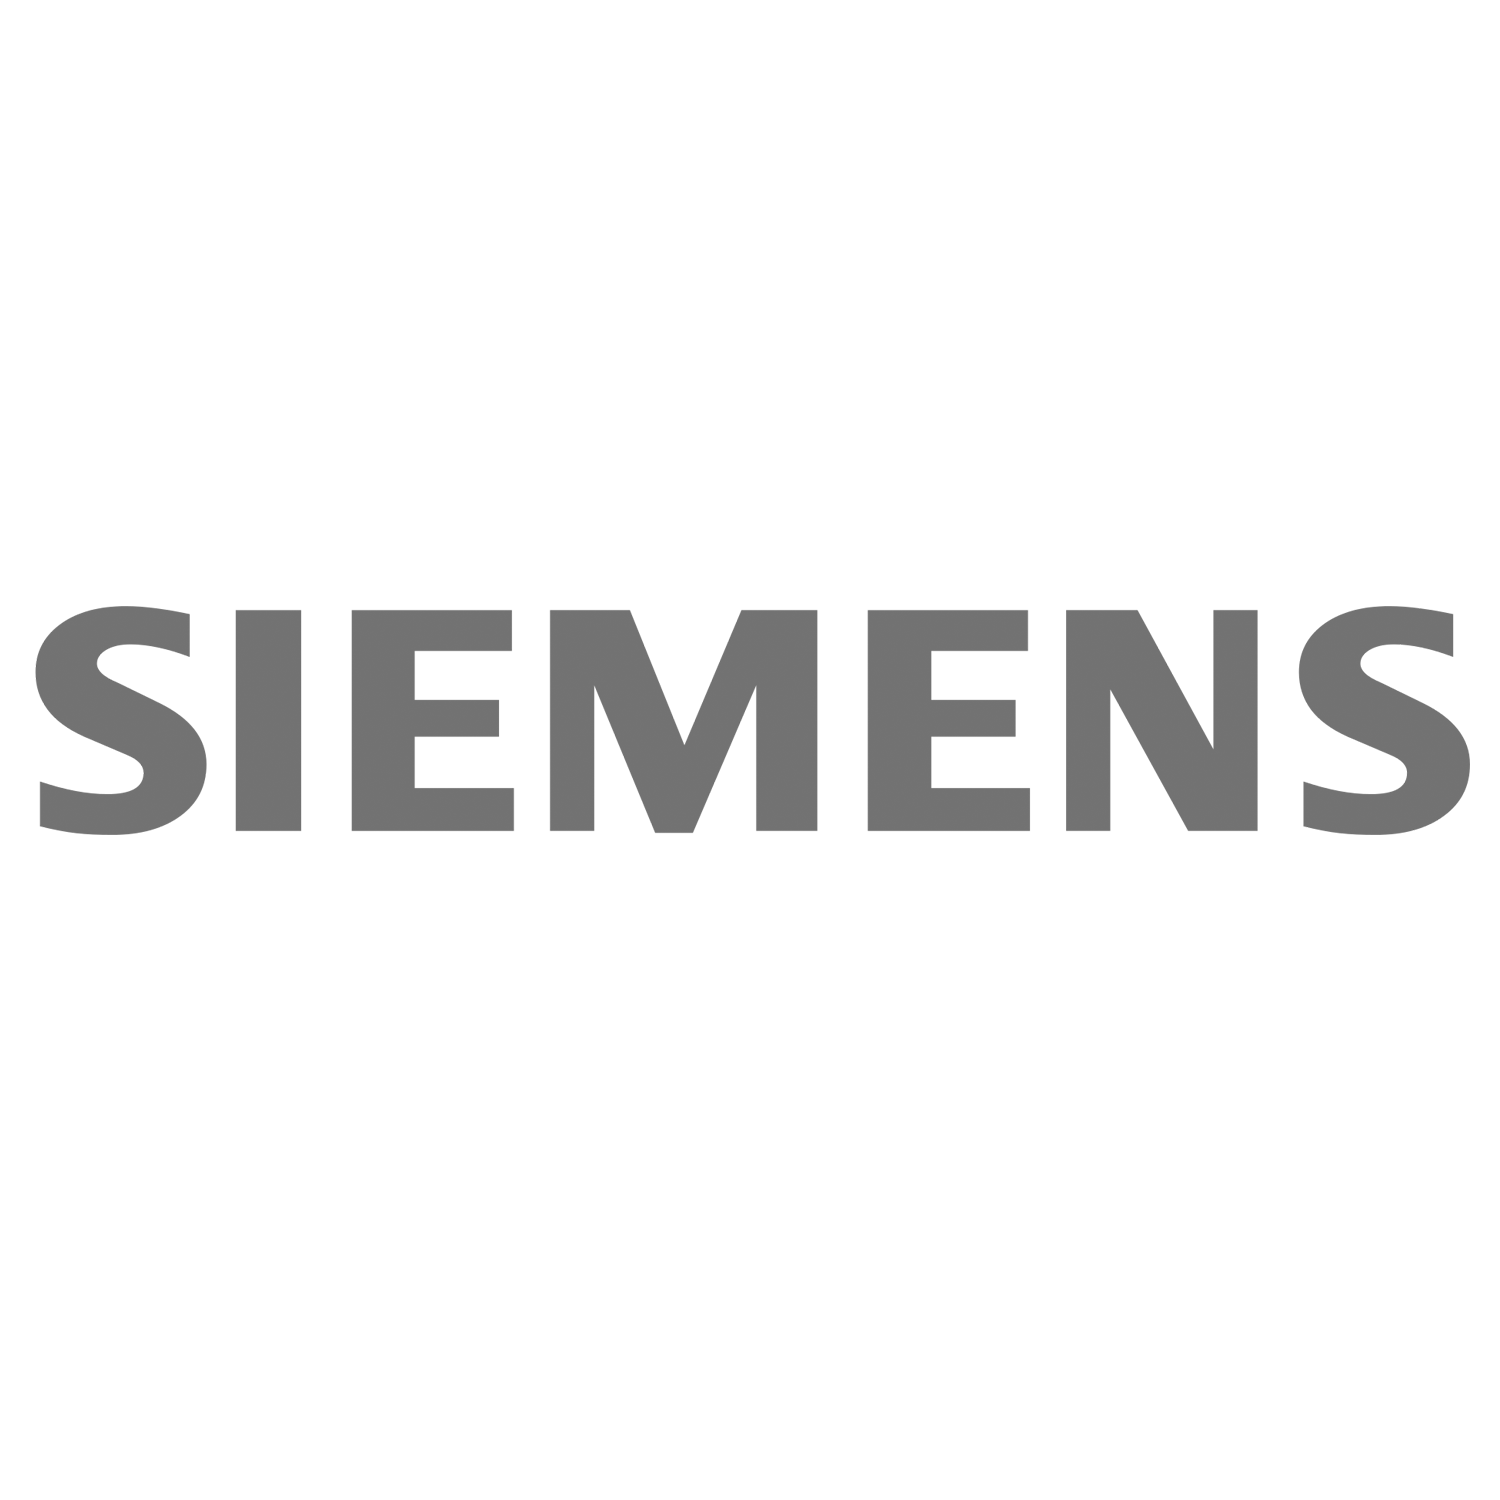 Siemens_mv